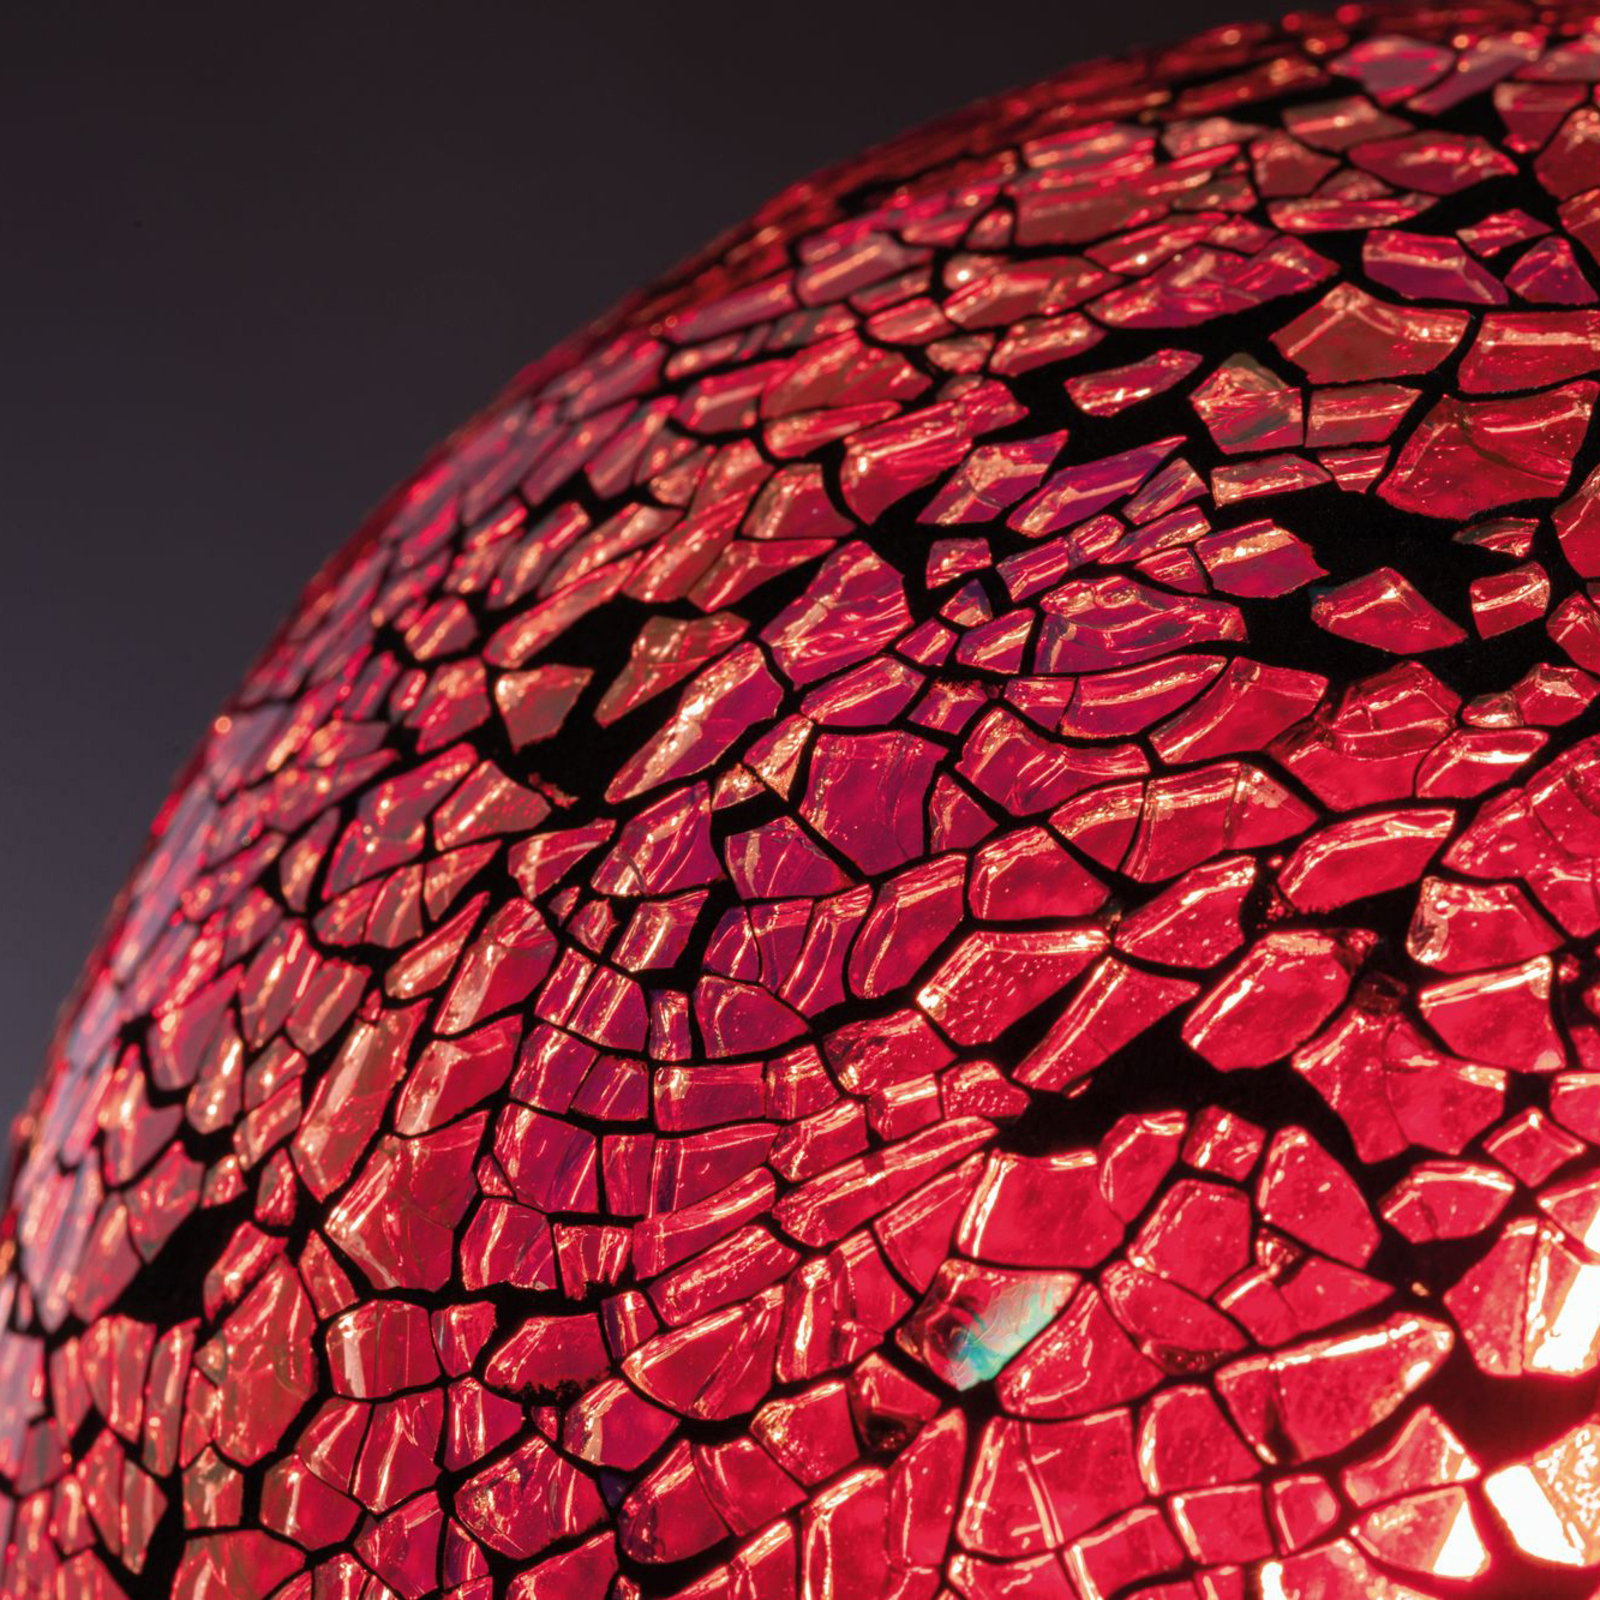 Paulmann E27 LED globe 5W Miracle Mosaic červená